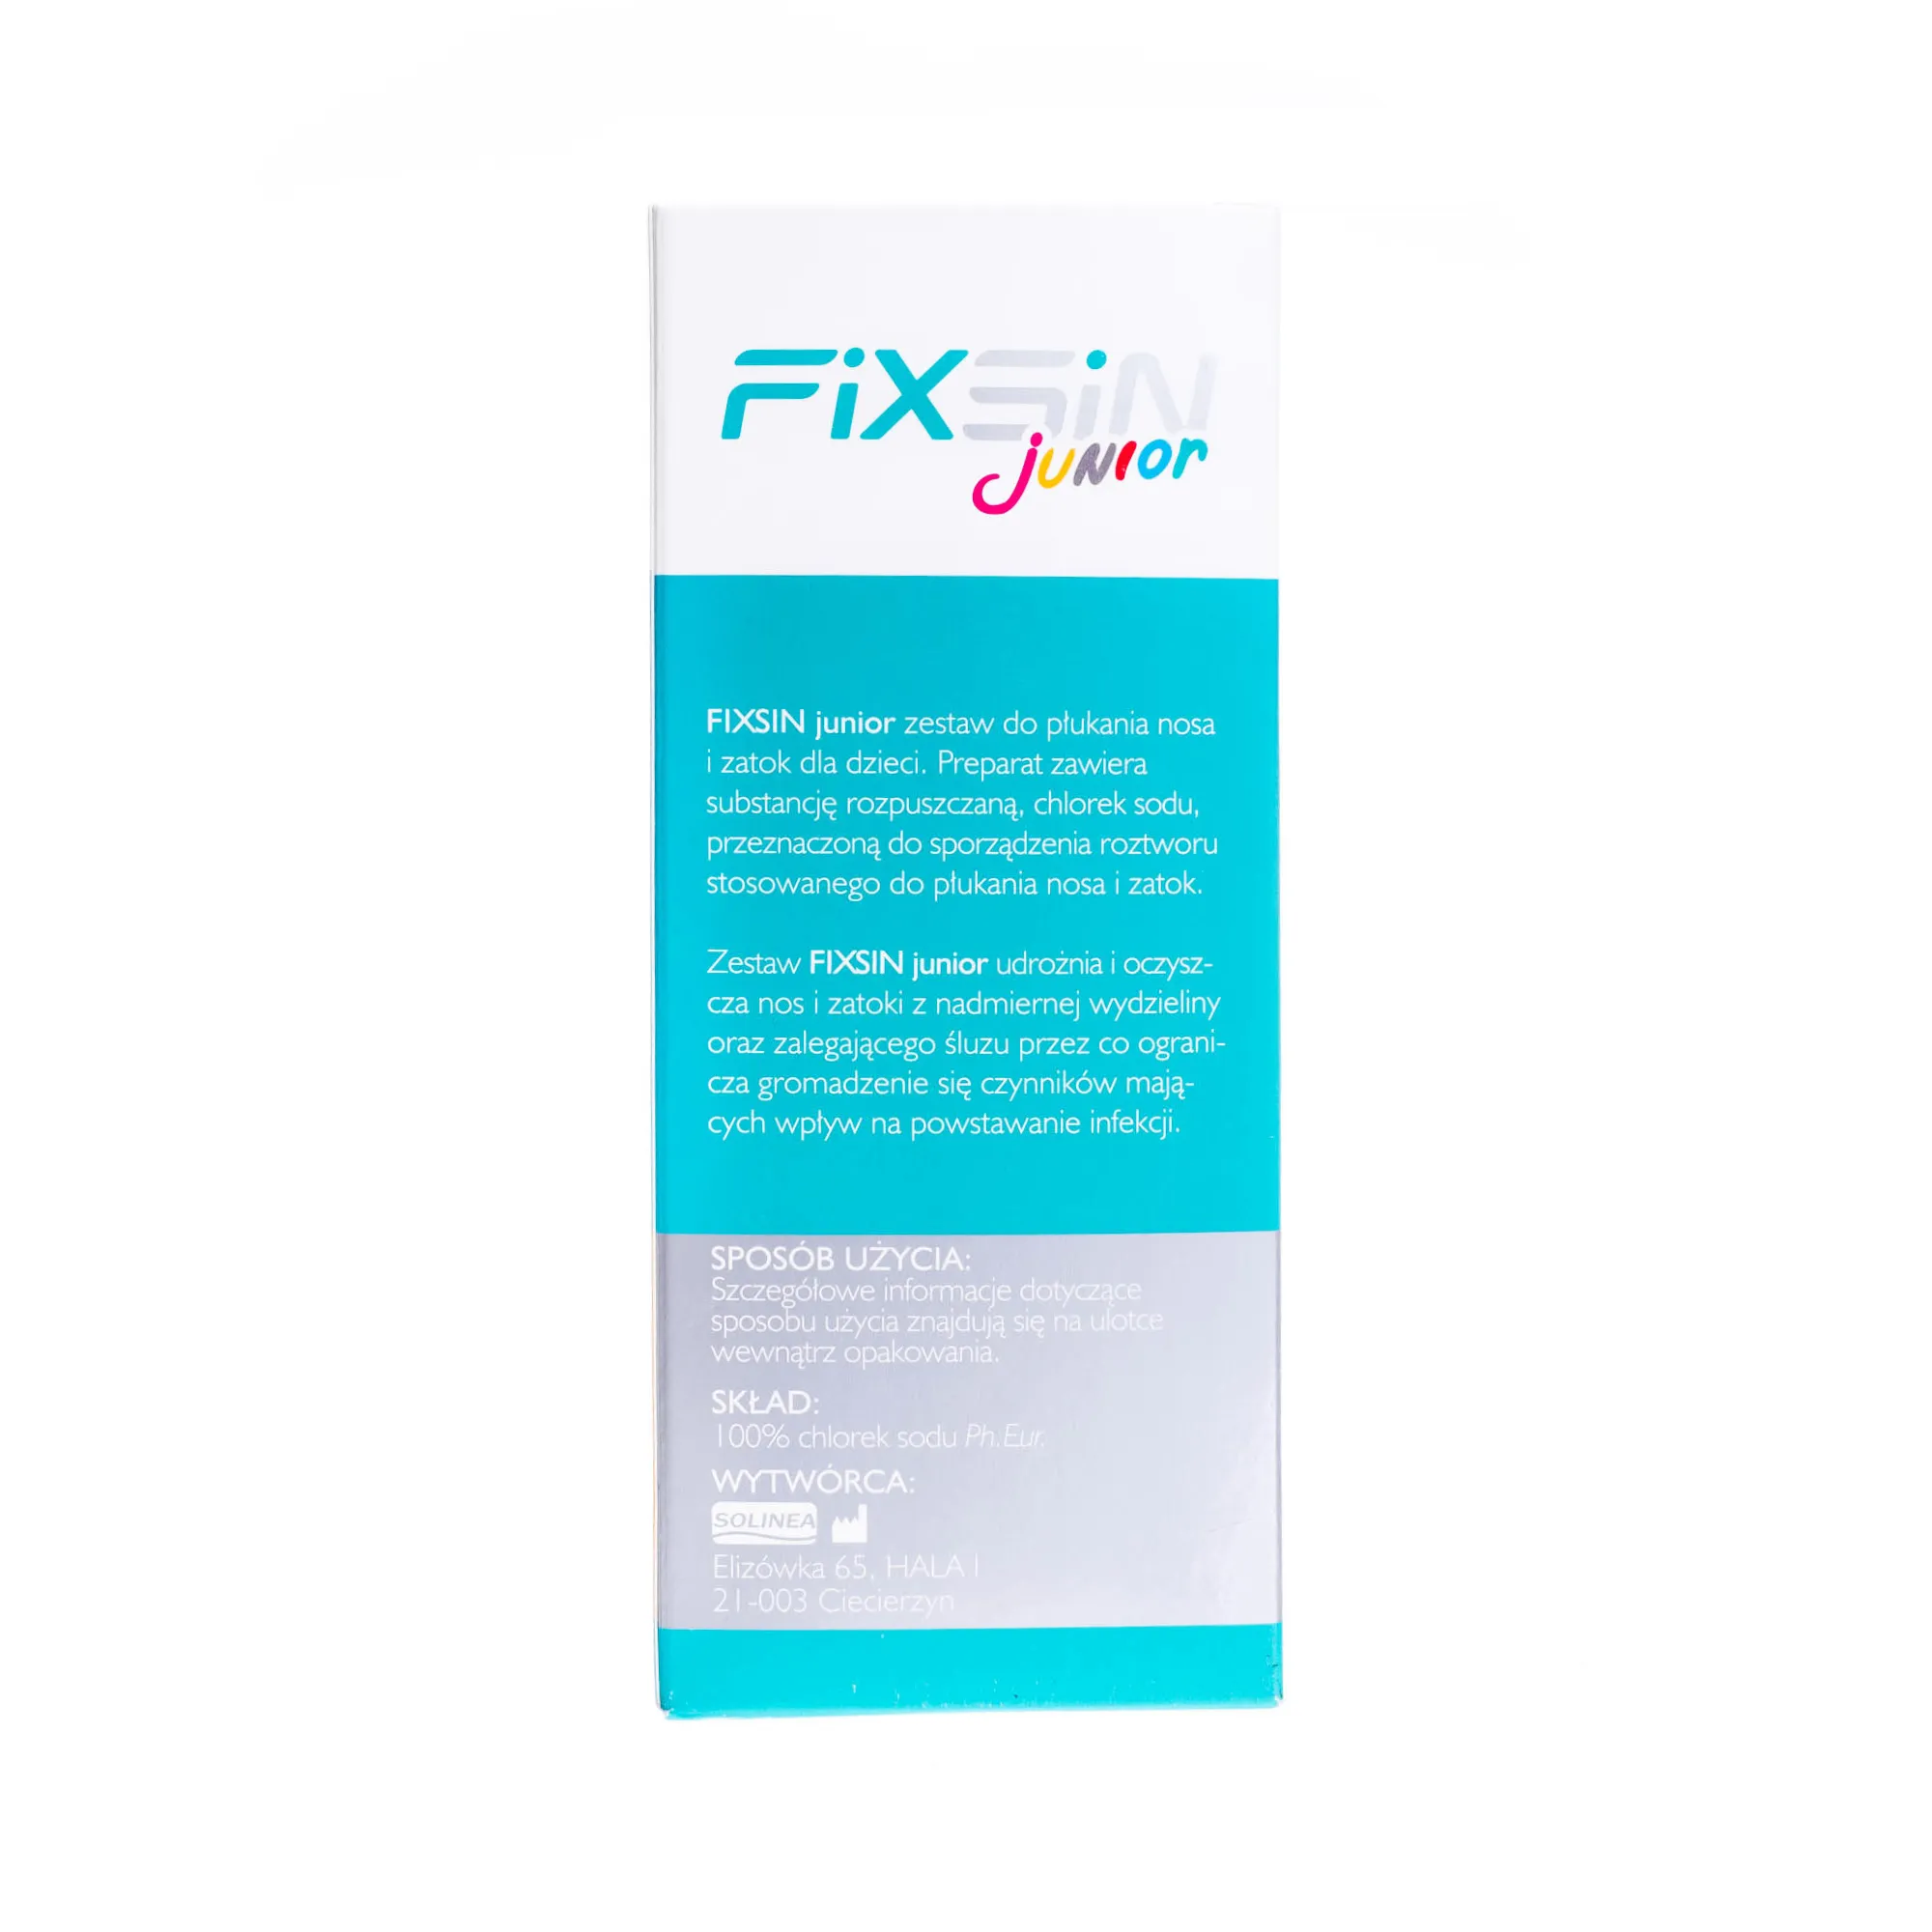 FixSin Junior - zestaw do płukania nosa i zatok, 1 butelka(120 ml) i 30 saszetek 